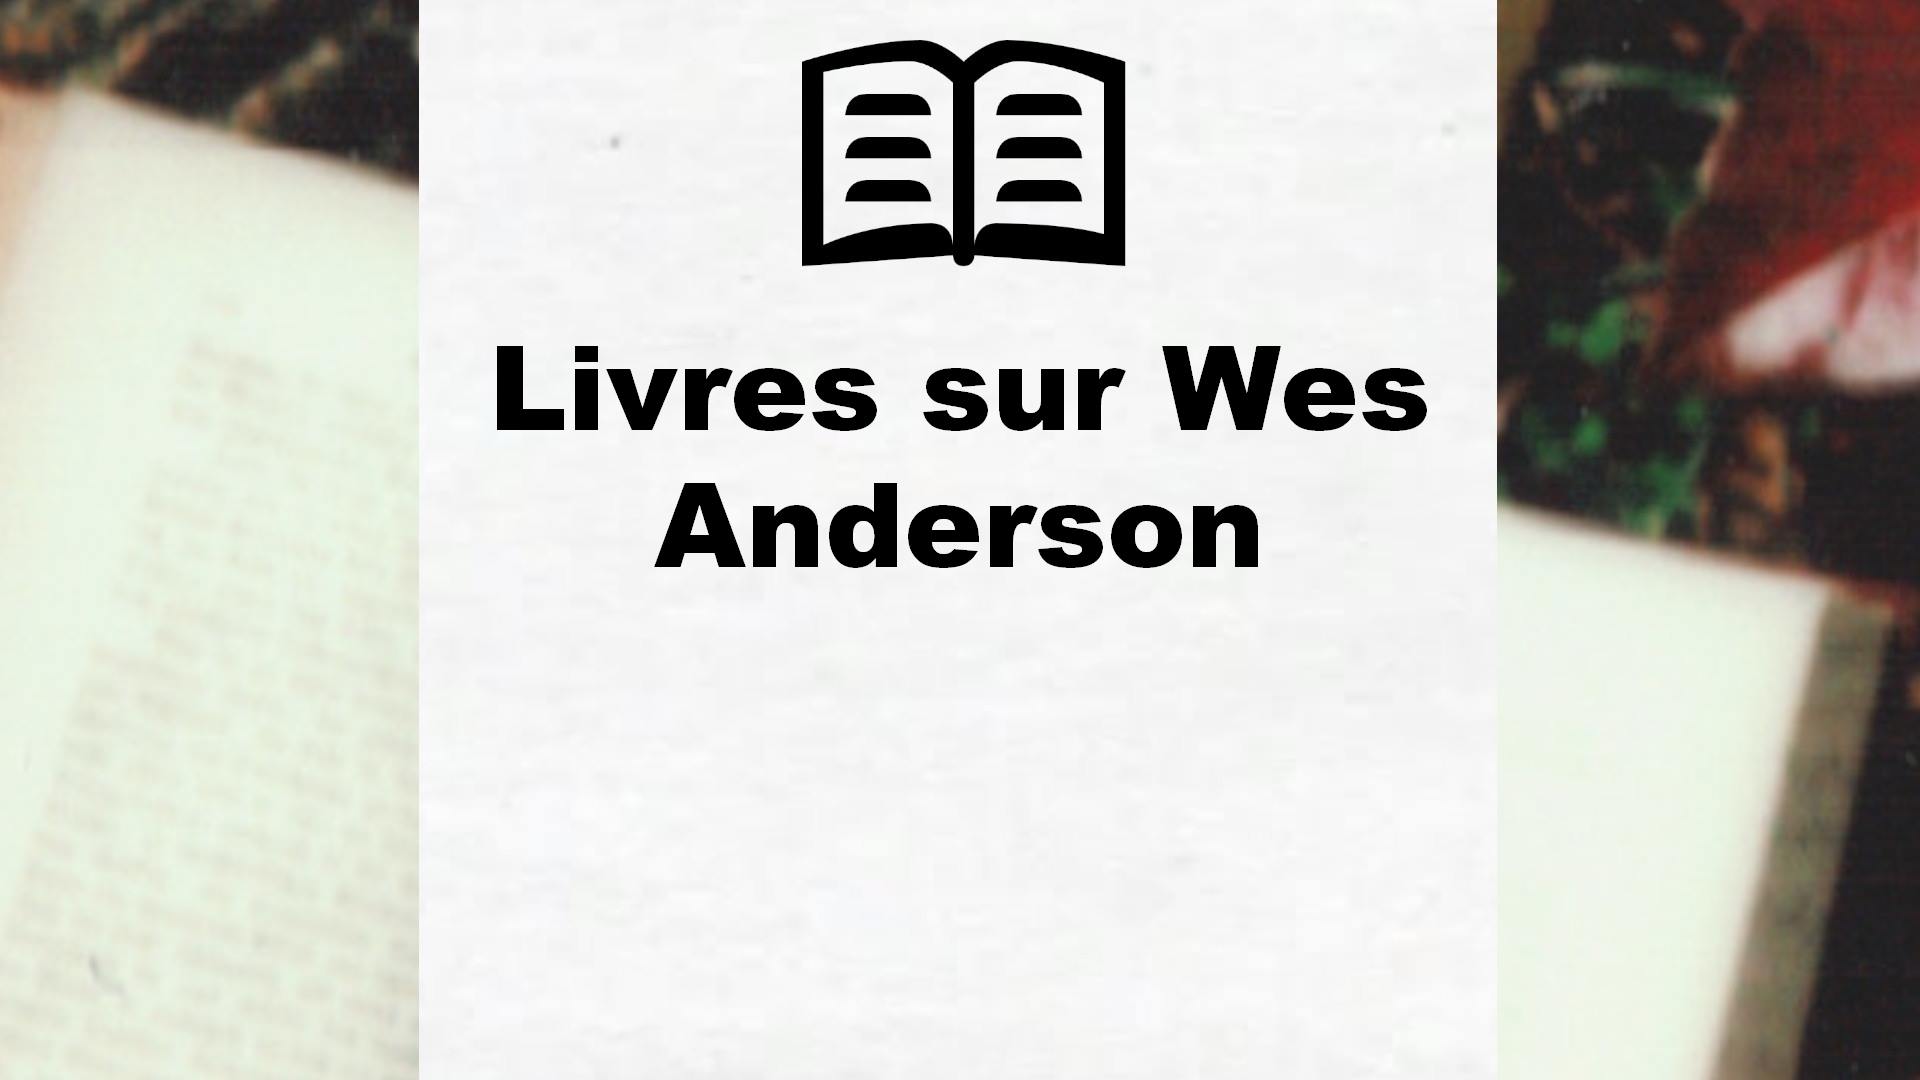 Livres sur Wes Anderson